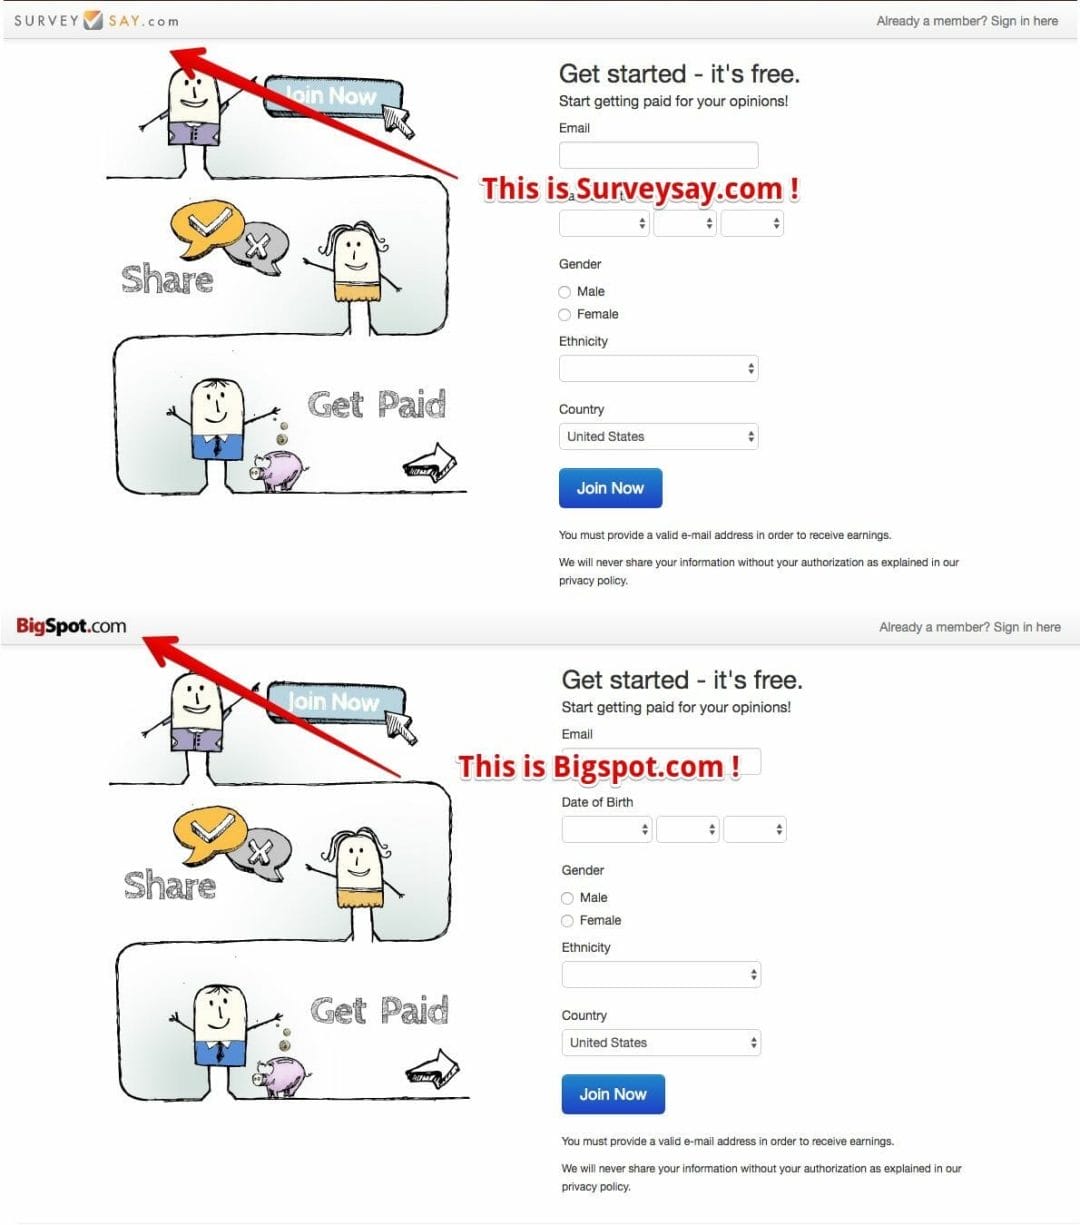 An image for comparison of Bigspot.com and Surveyspot.com